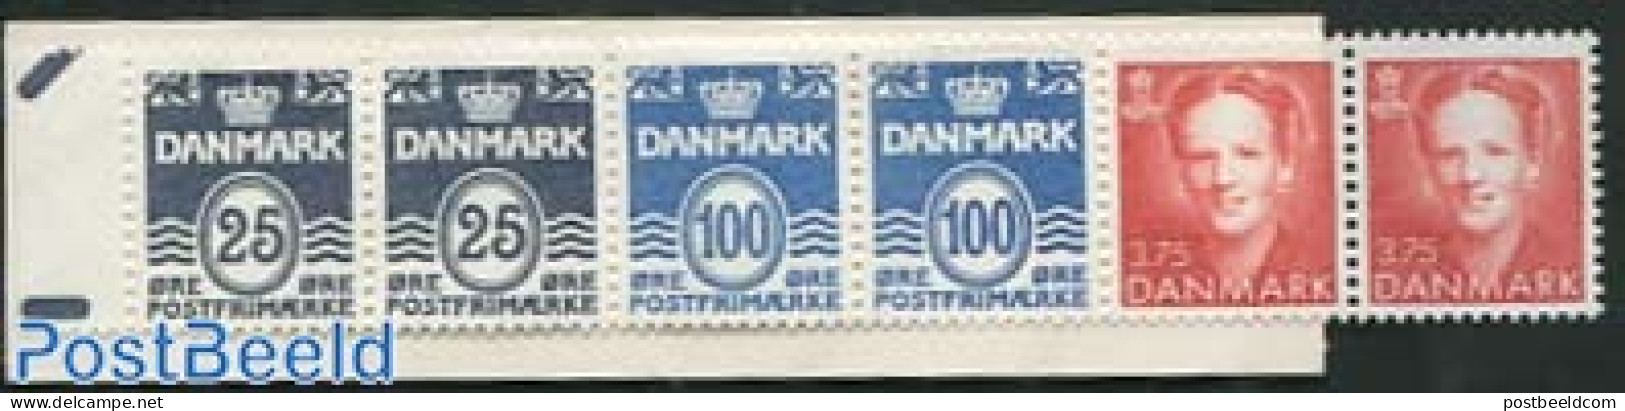 Denmark 1996 Definitives Booklet, Mint NH, Stamp Booklets - Nuevos